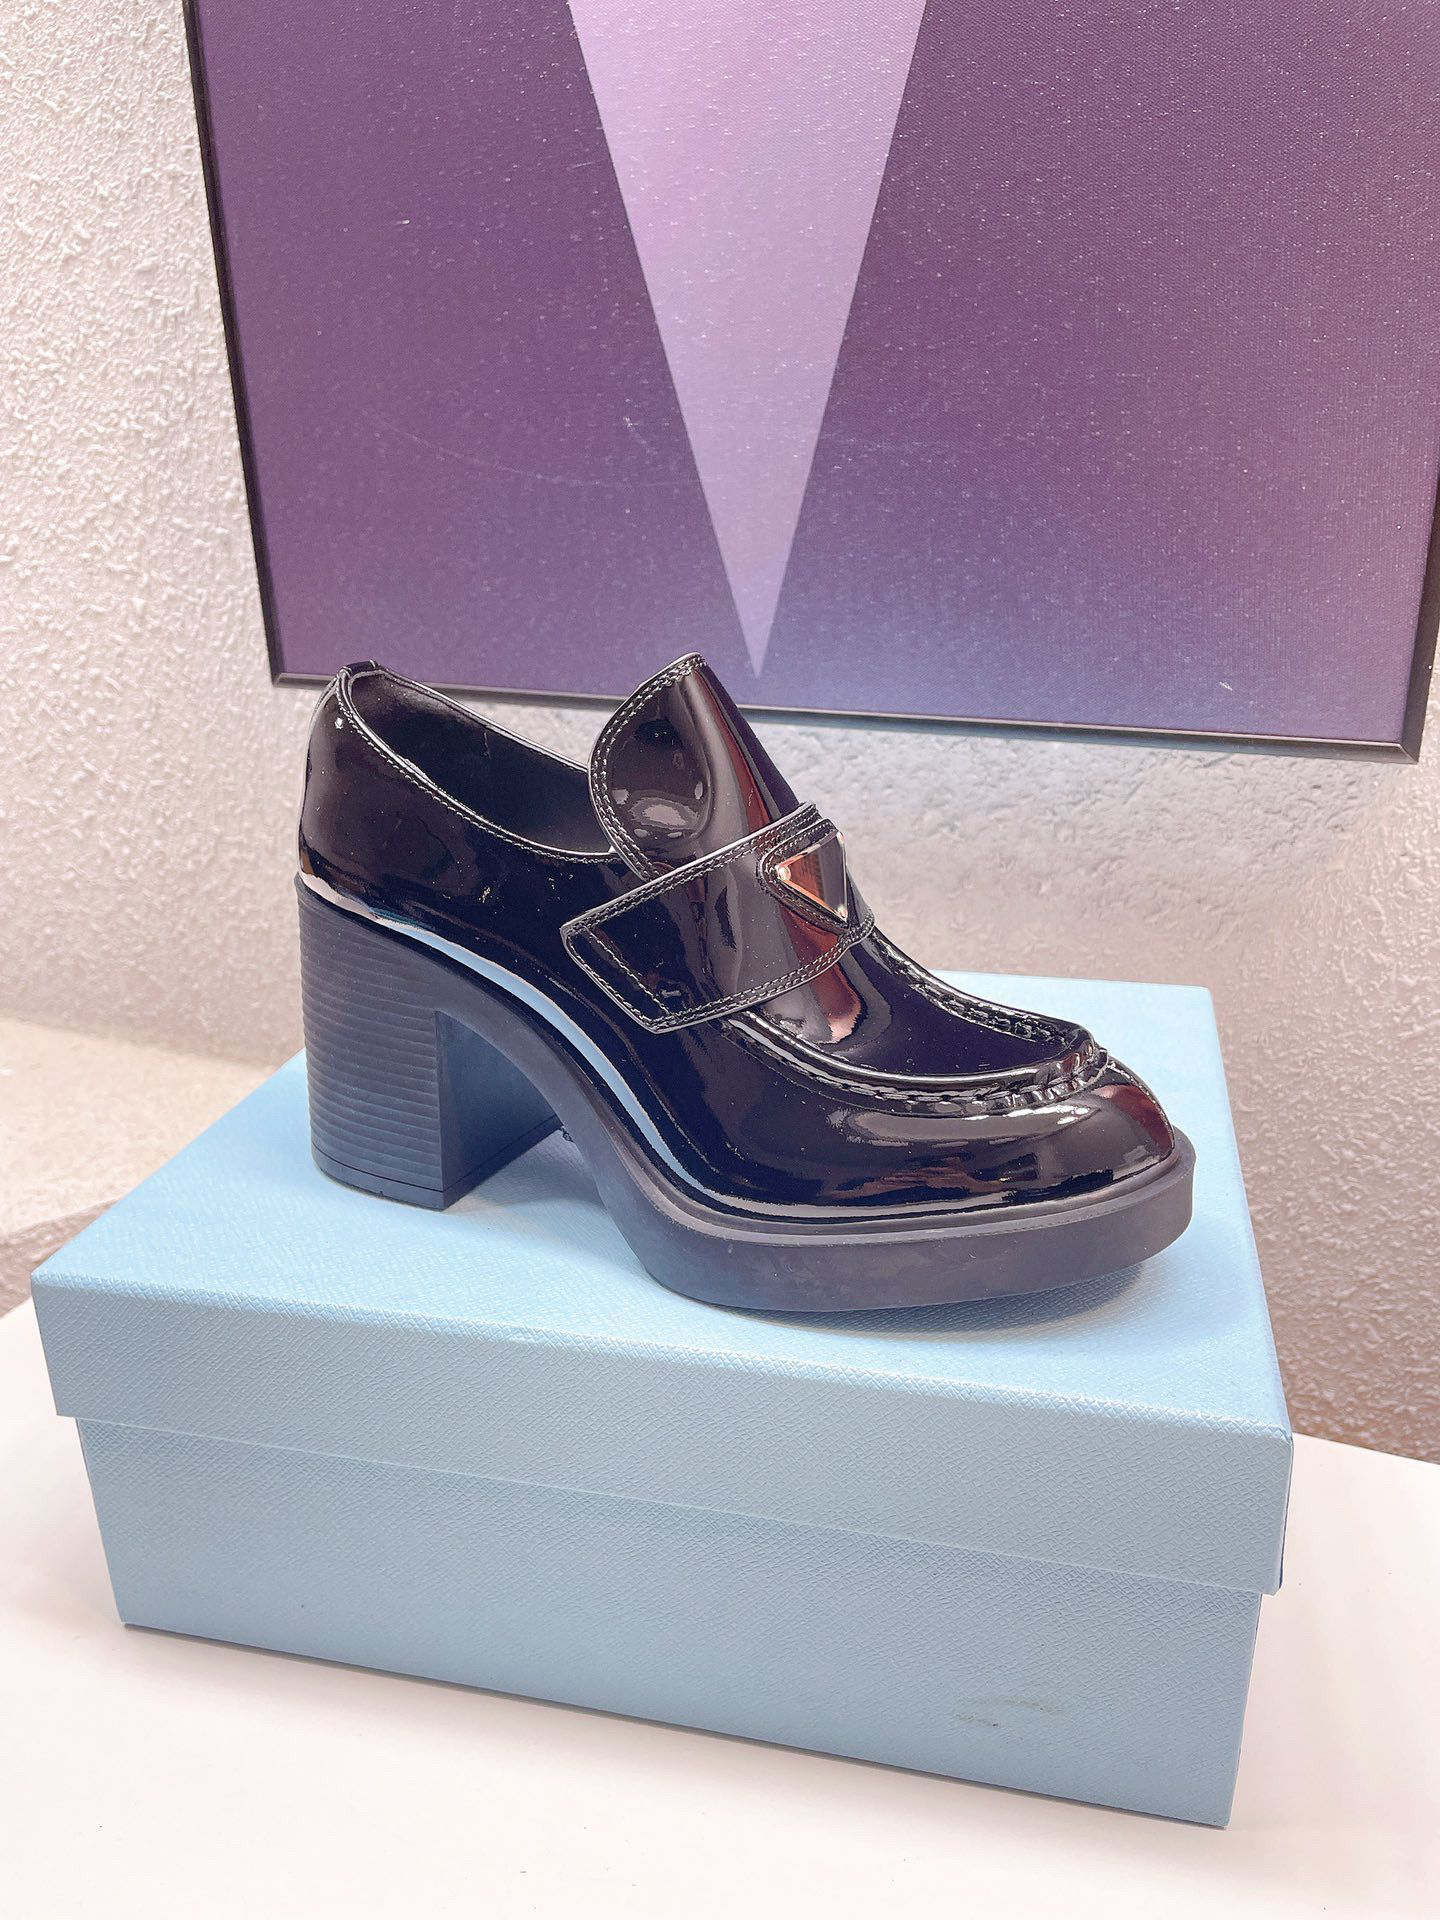 كلاسيكي أسود من الدانتيل الأسود لأحذية مصمم جلدي مصمم الكعب السميك الكعب العالي بنسبة 100 ٪ شرابات البقر الدائرية جولة الرأس المعدنية الزر المعدني نساء عالي الكعب الحذاء الحذاء 34-40-41 مع صندوق